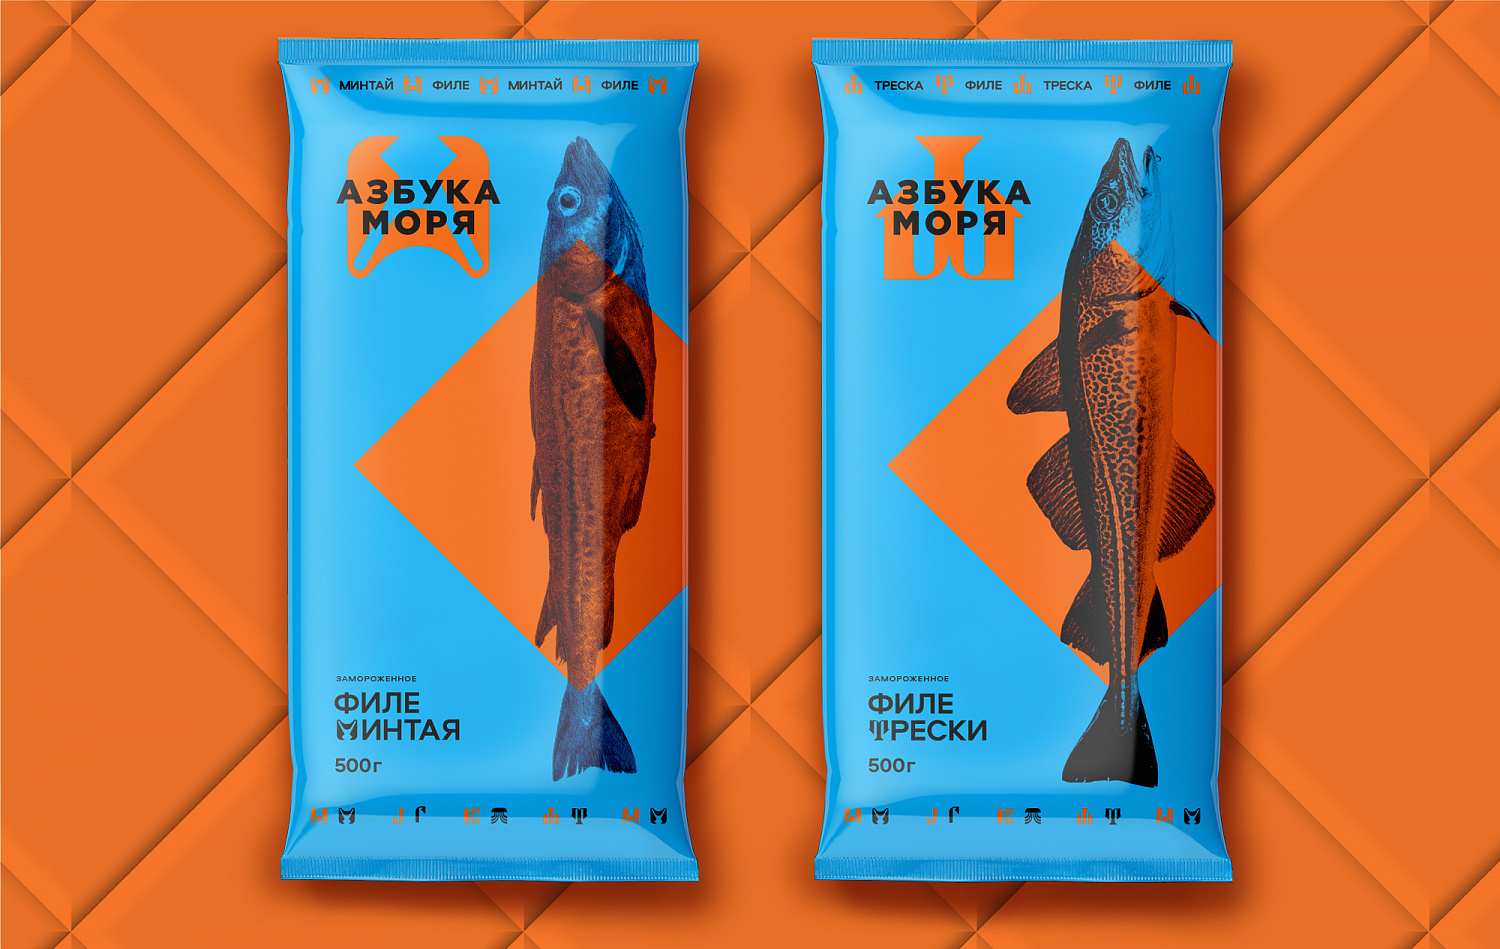 Азбука Моря: дизайн-система для бренда рыбы и морепродуктов - Портфолио Depot